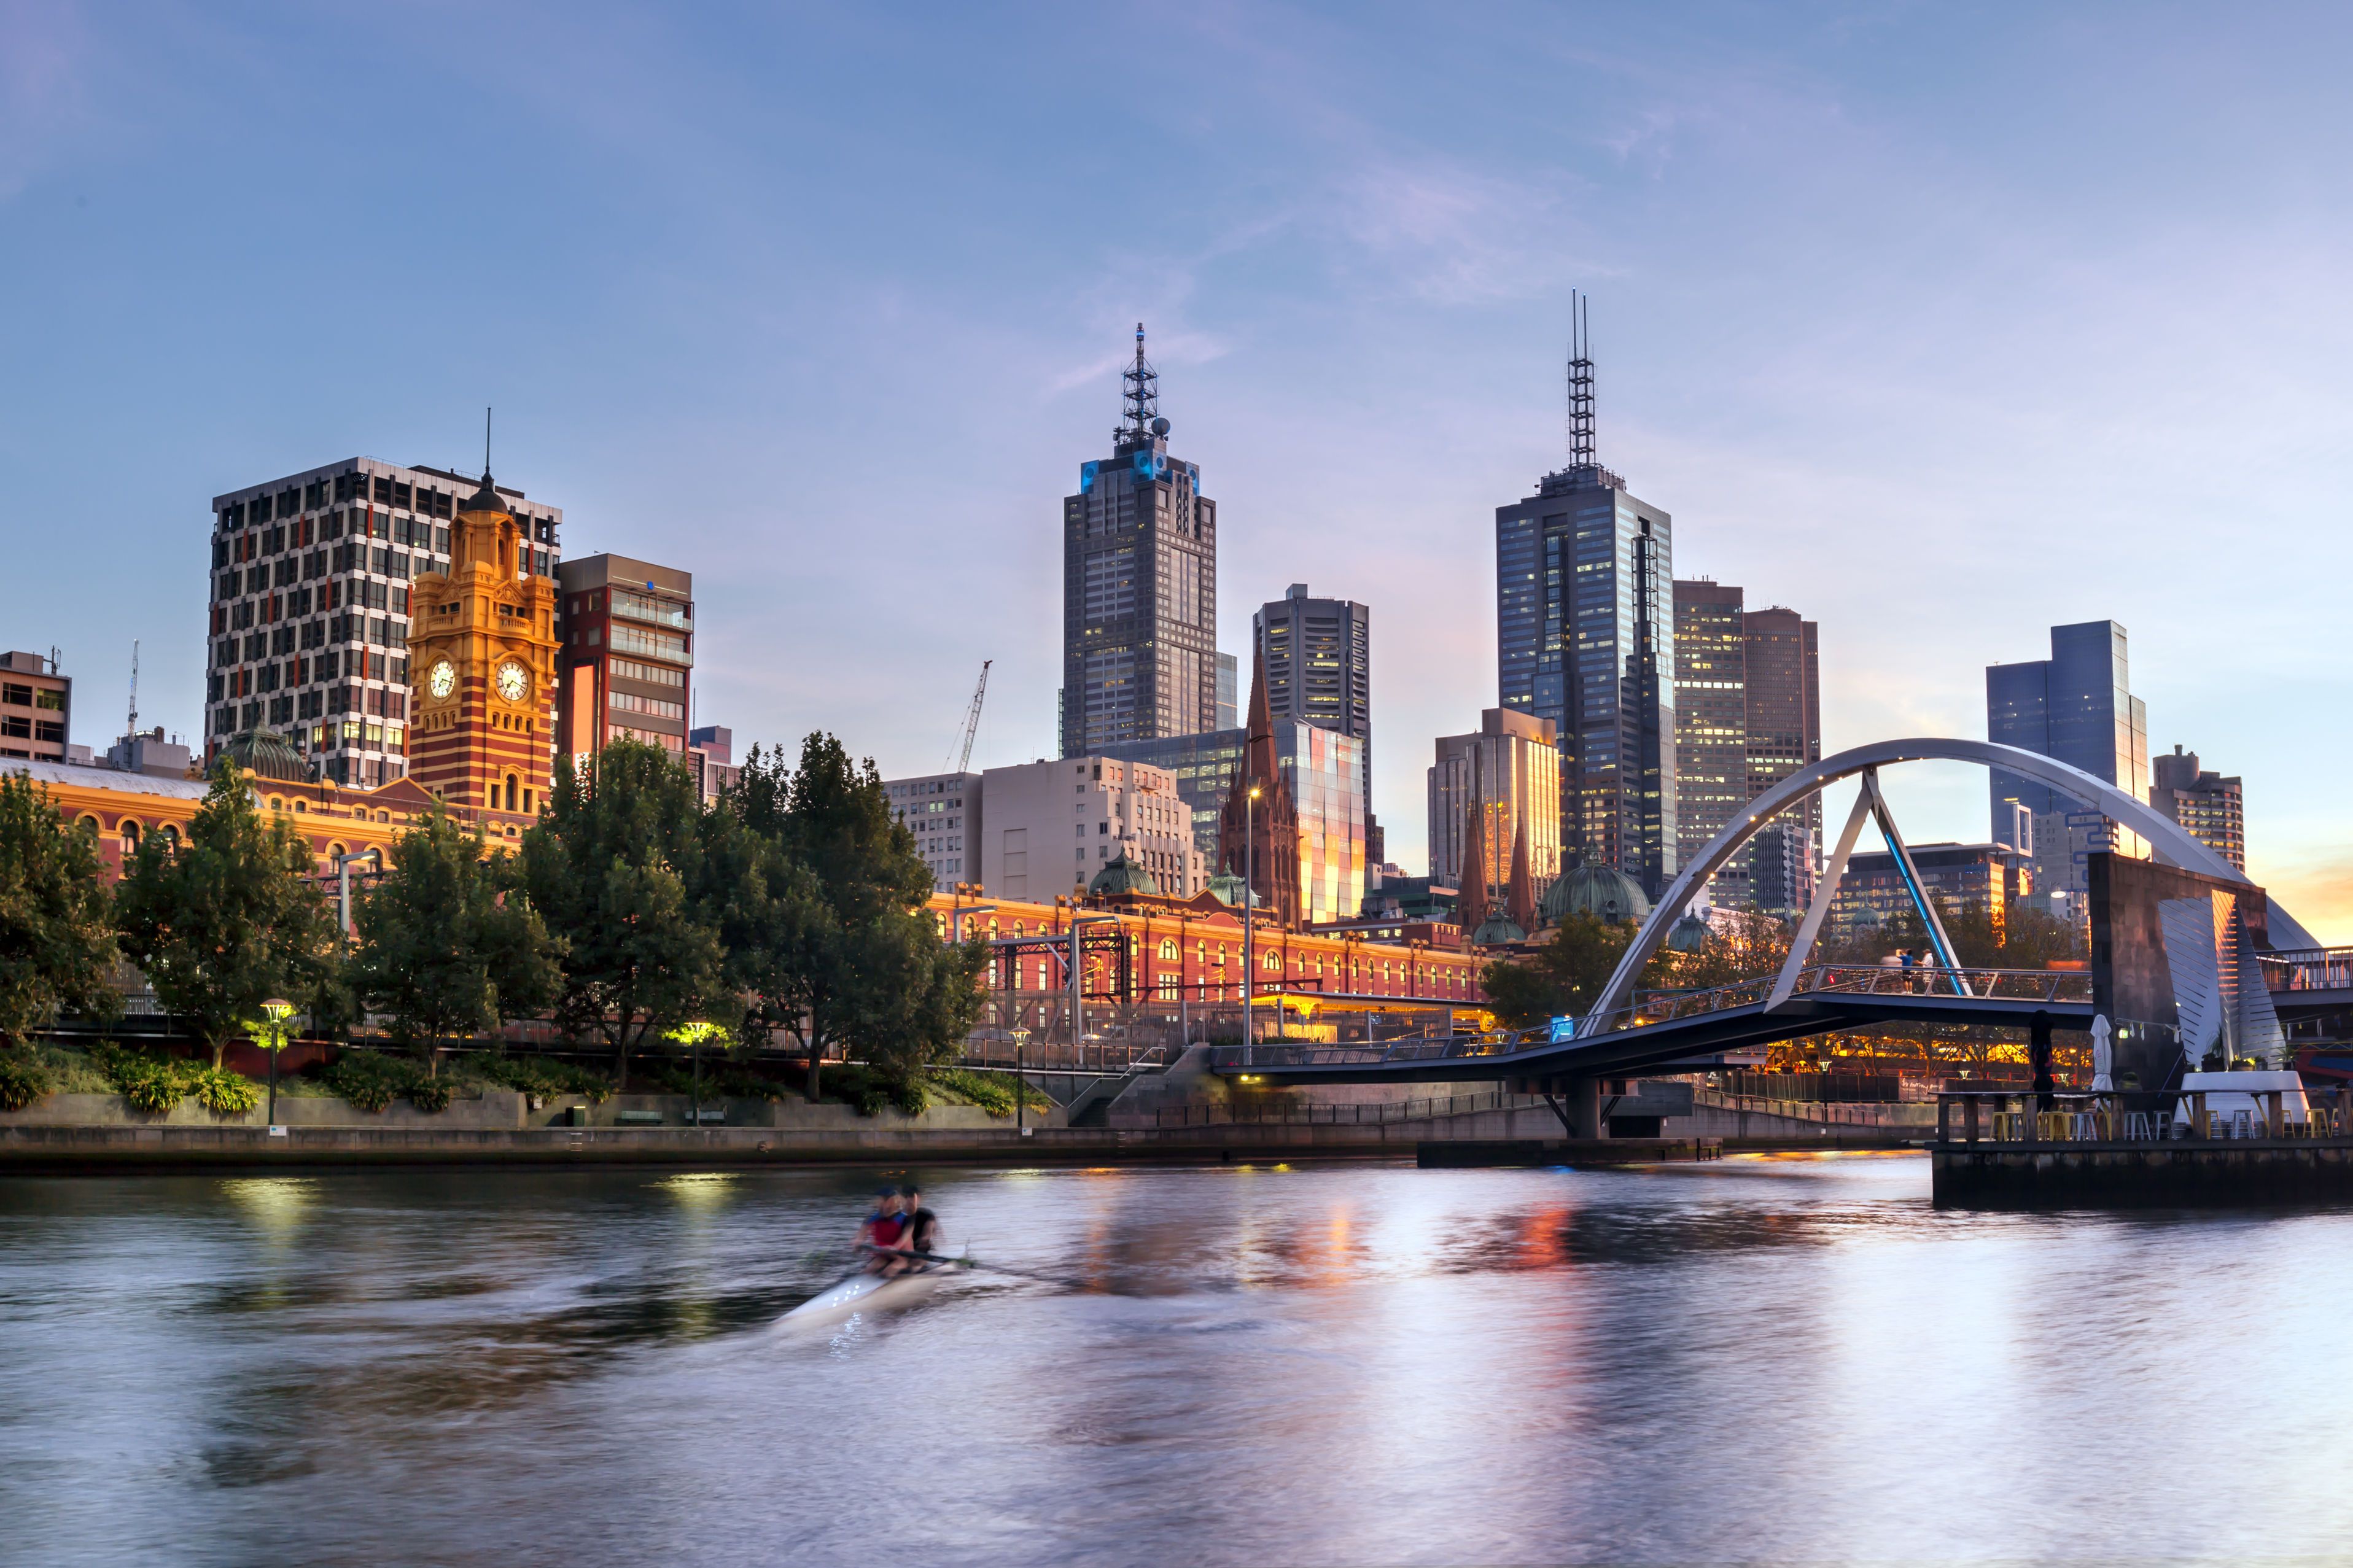 Melbourne Yarra River 